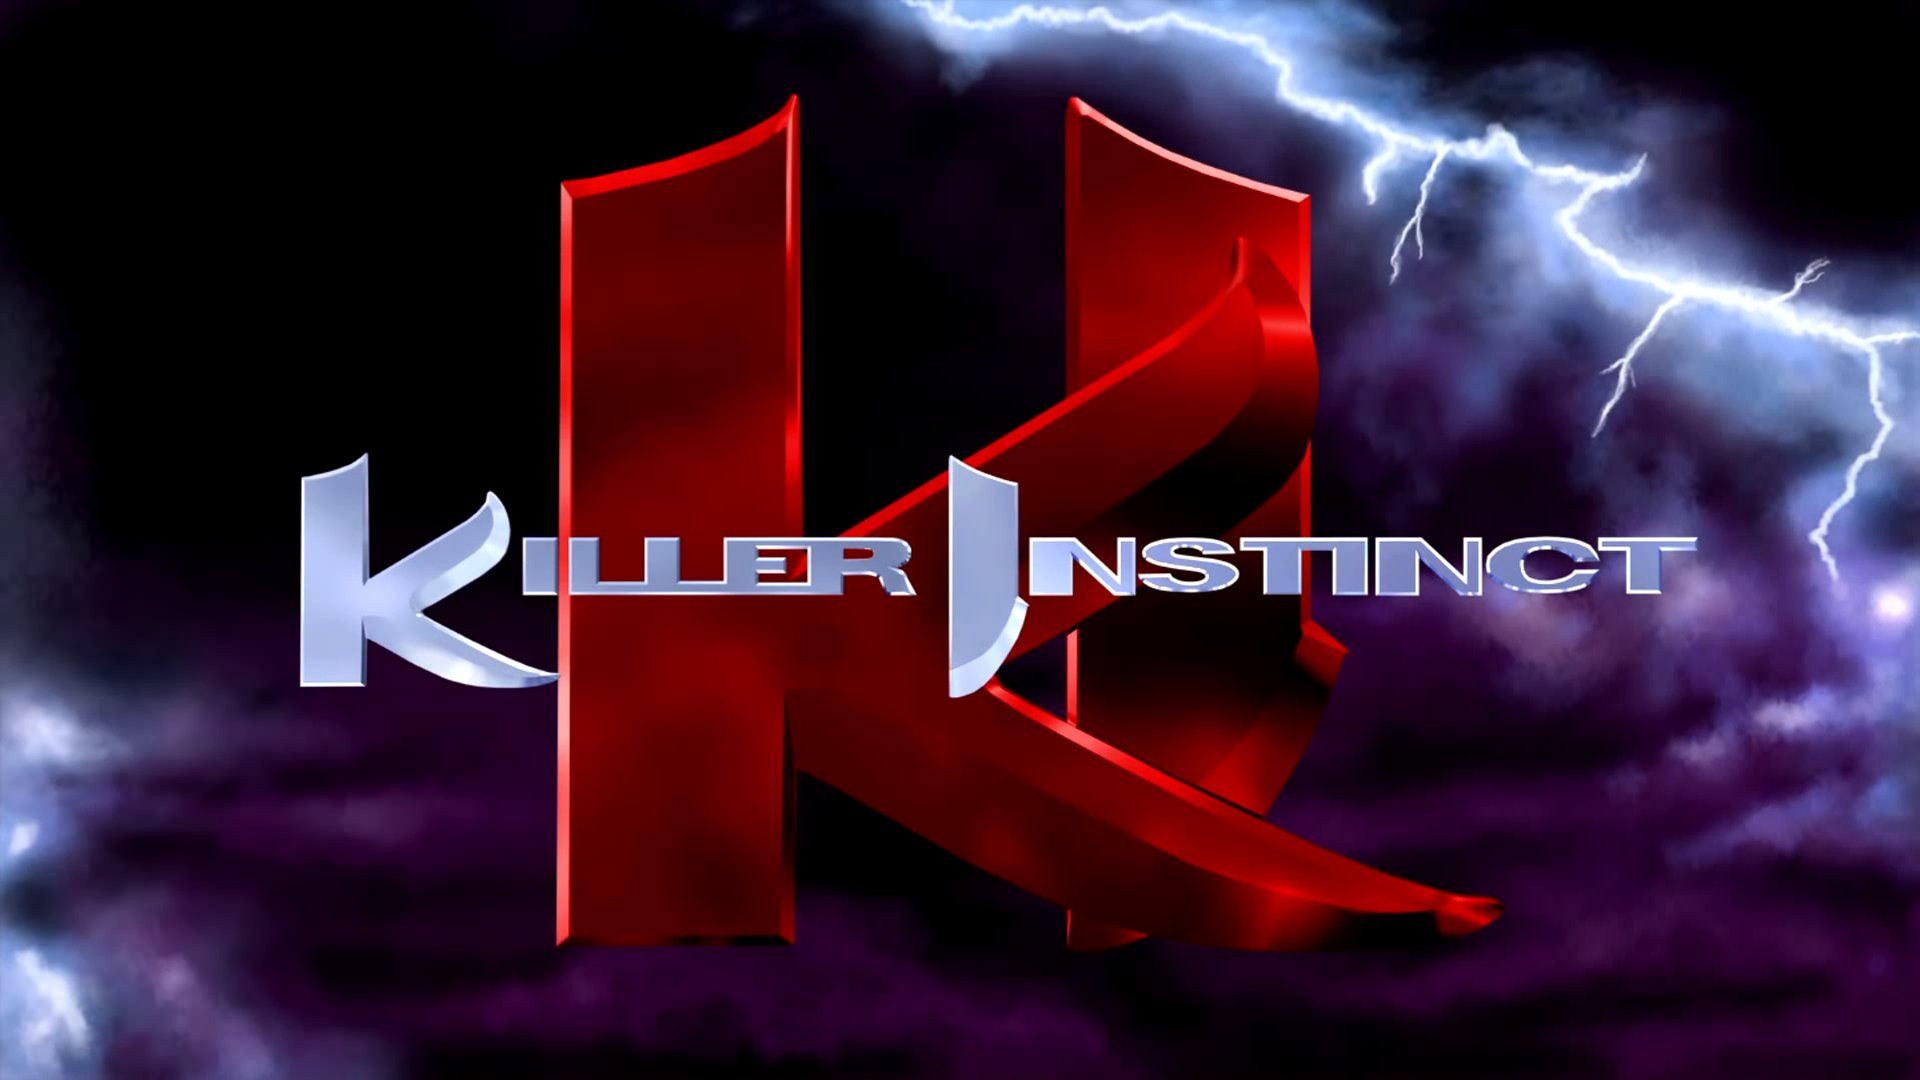 KILLER INSTINCT fighting fantasy game game (8) wallpaper ...